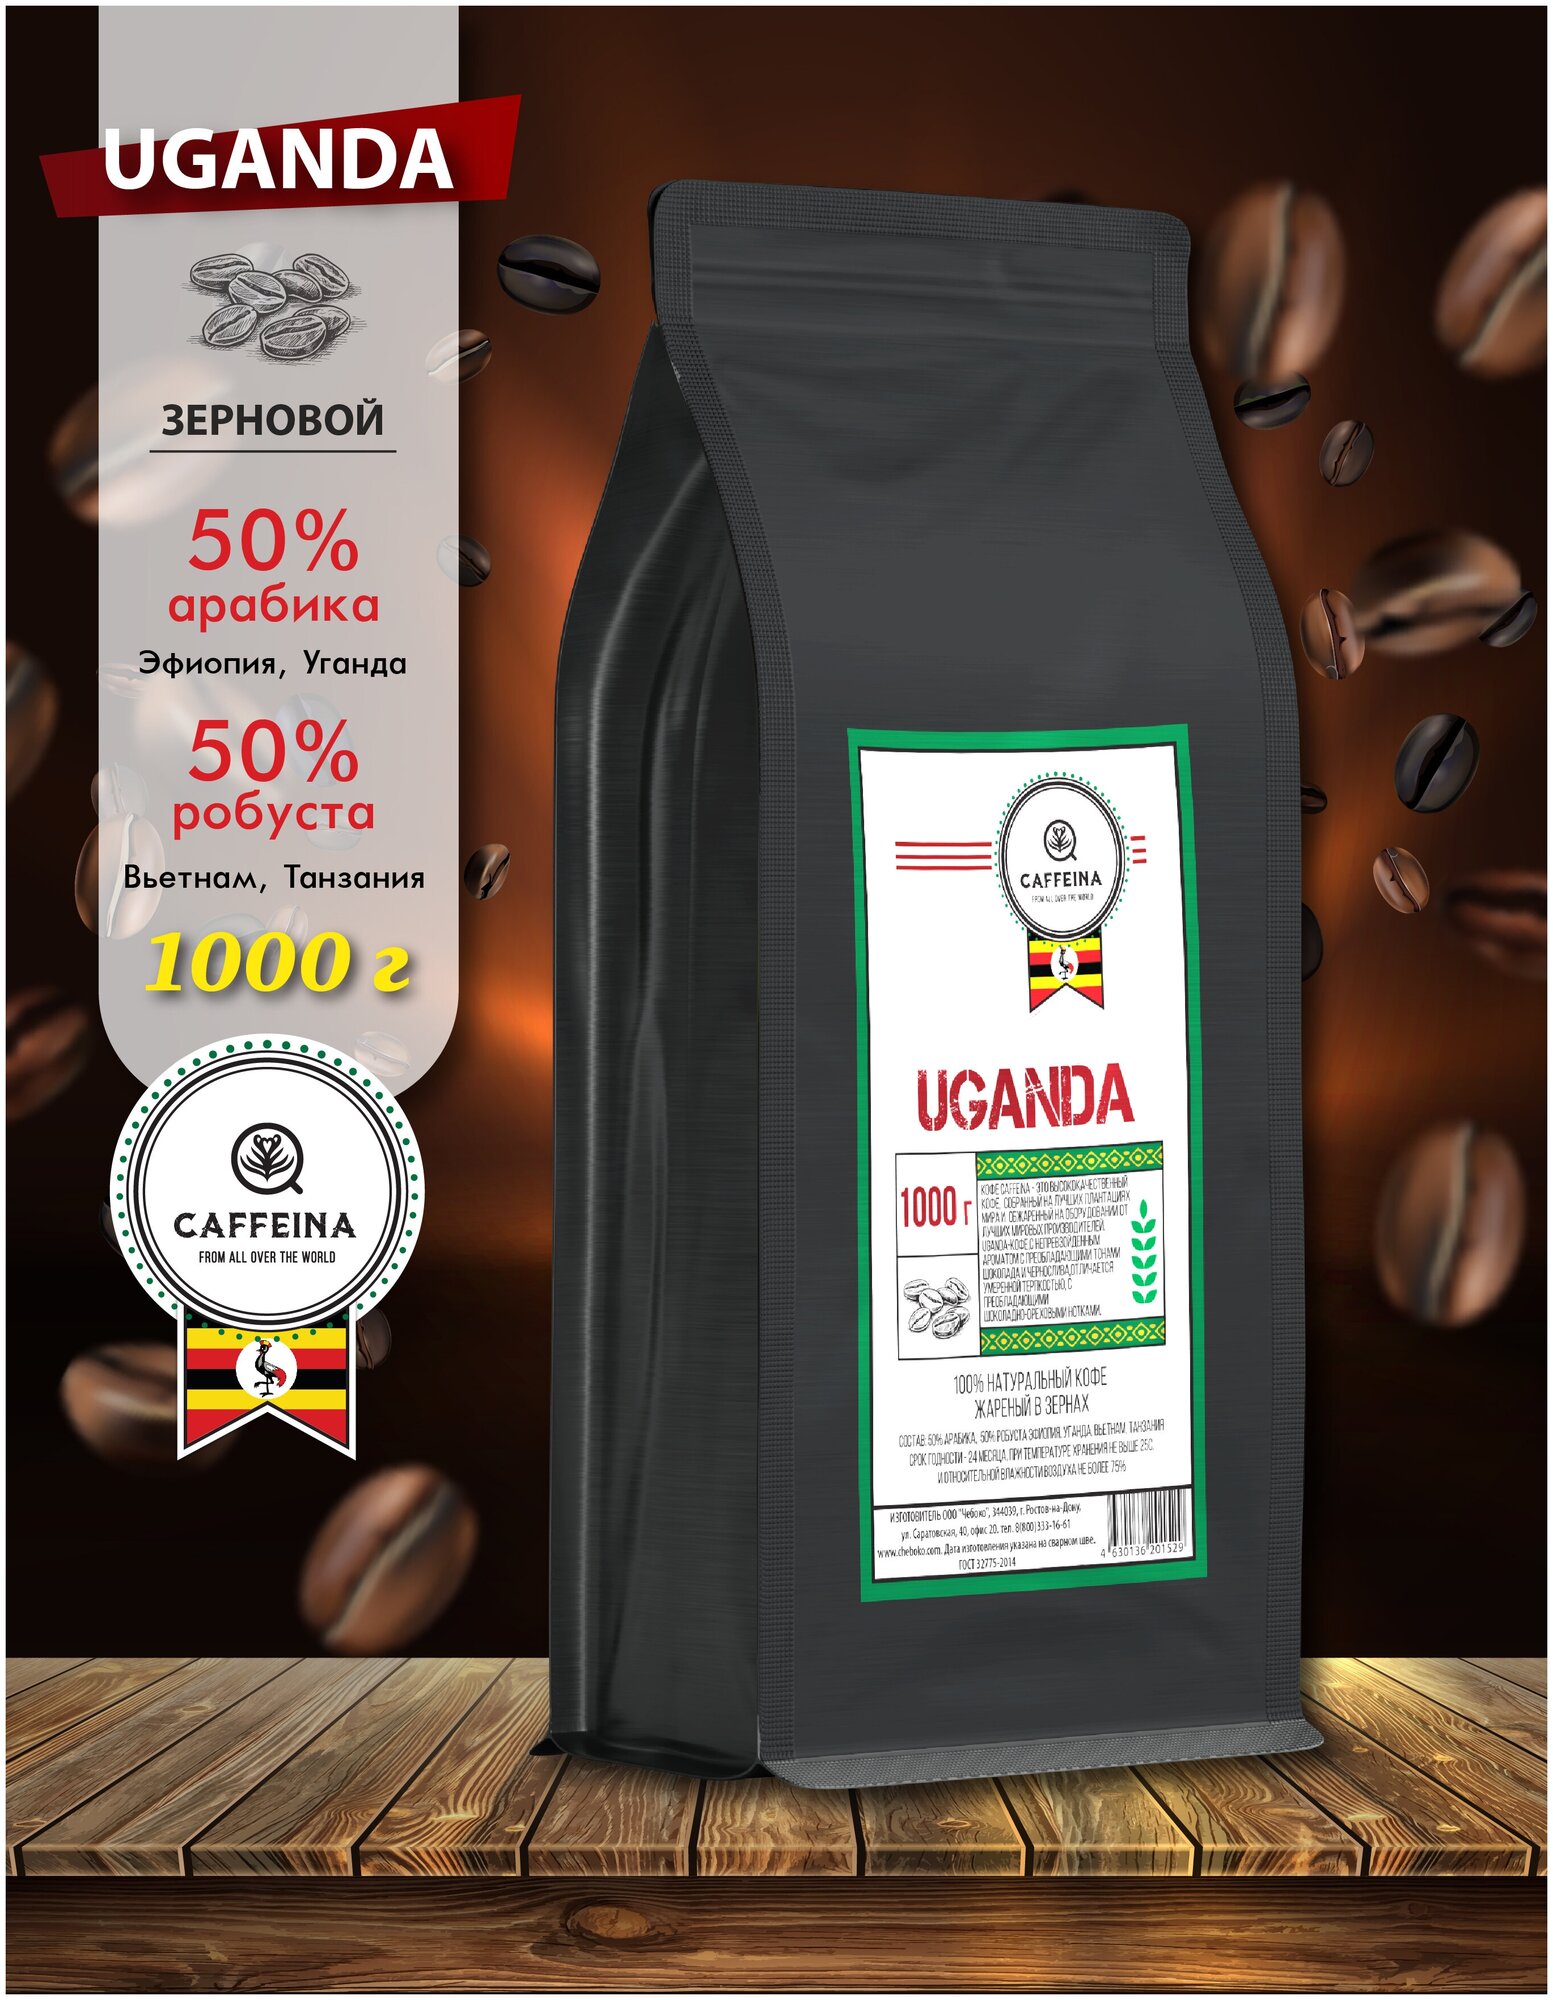 Кофе в зернах натуральный Caffeina Uganda 1 кг (50% арабика Эфиопия, Уганда, 50% робуста Вьетнам, Танзания) - фотография № 1